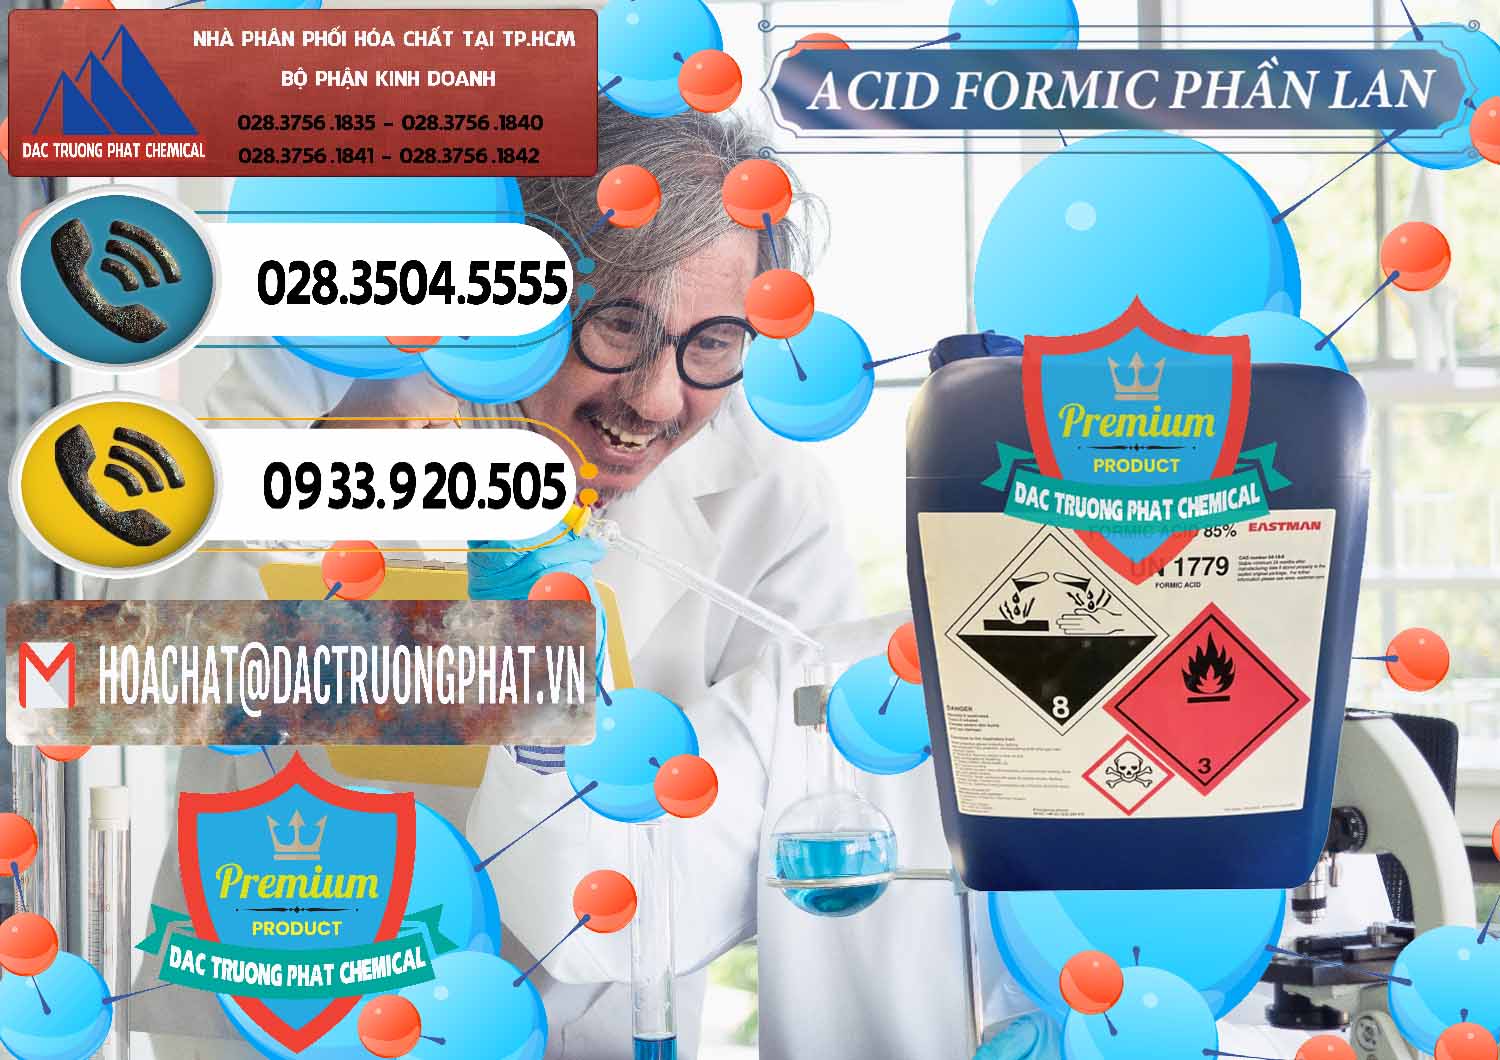 Cty bán và cung ứng Acid Formic - Axit Formic Phần Lan Finland - 0376 - Cung cấp - phân phối hóa chất tại TP.HCM - hoachatdetnhuom.vn